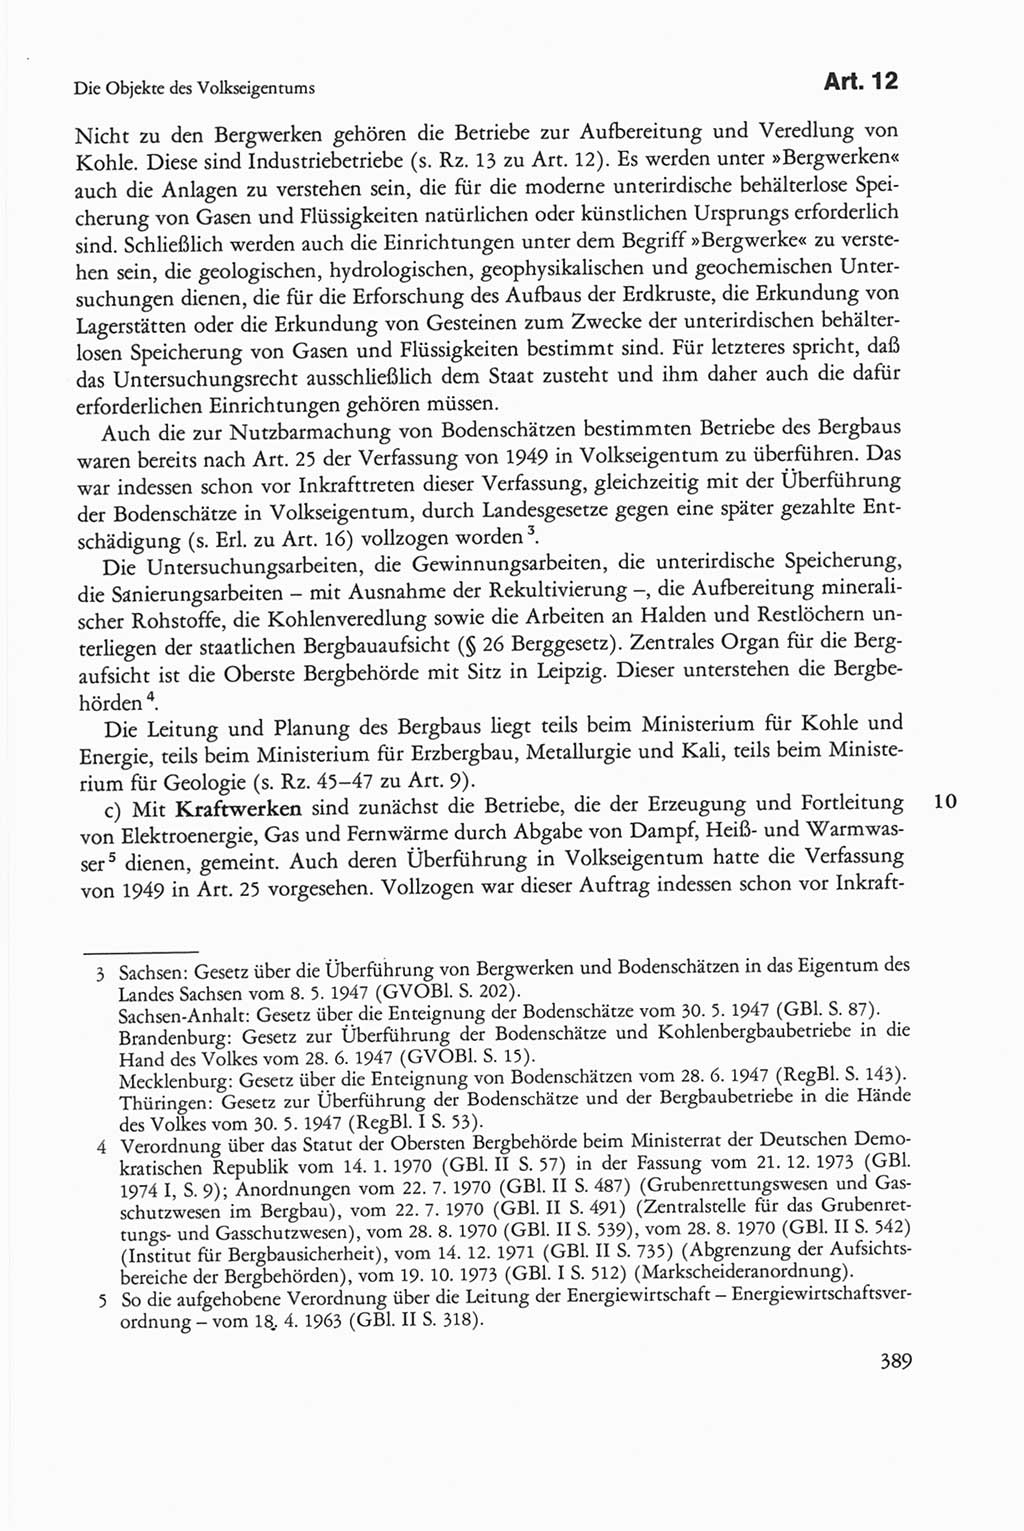 Die sozialistische Verfassung der Deutschen Demokratischen Republik (DDR), Kommentar 1982, Seite 389 (Soz. Verf. DDR Komm. 1982, S. 389)